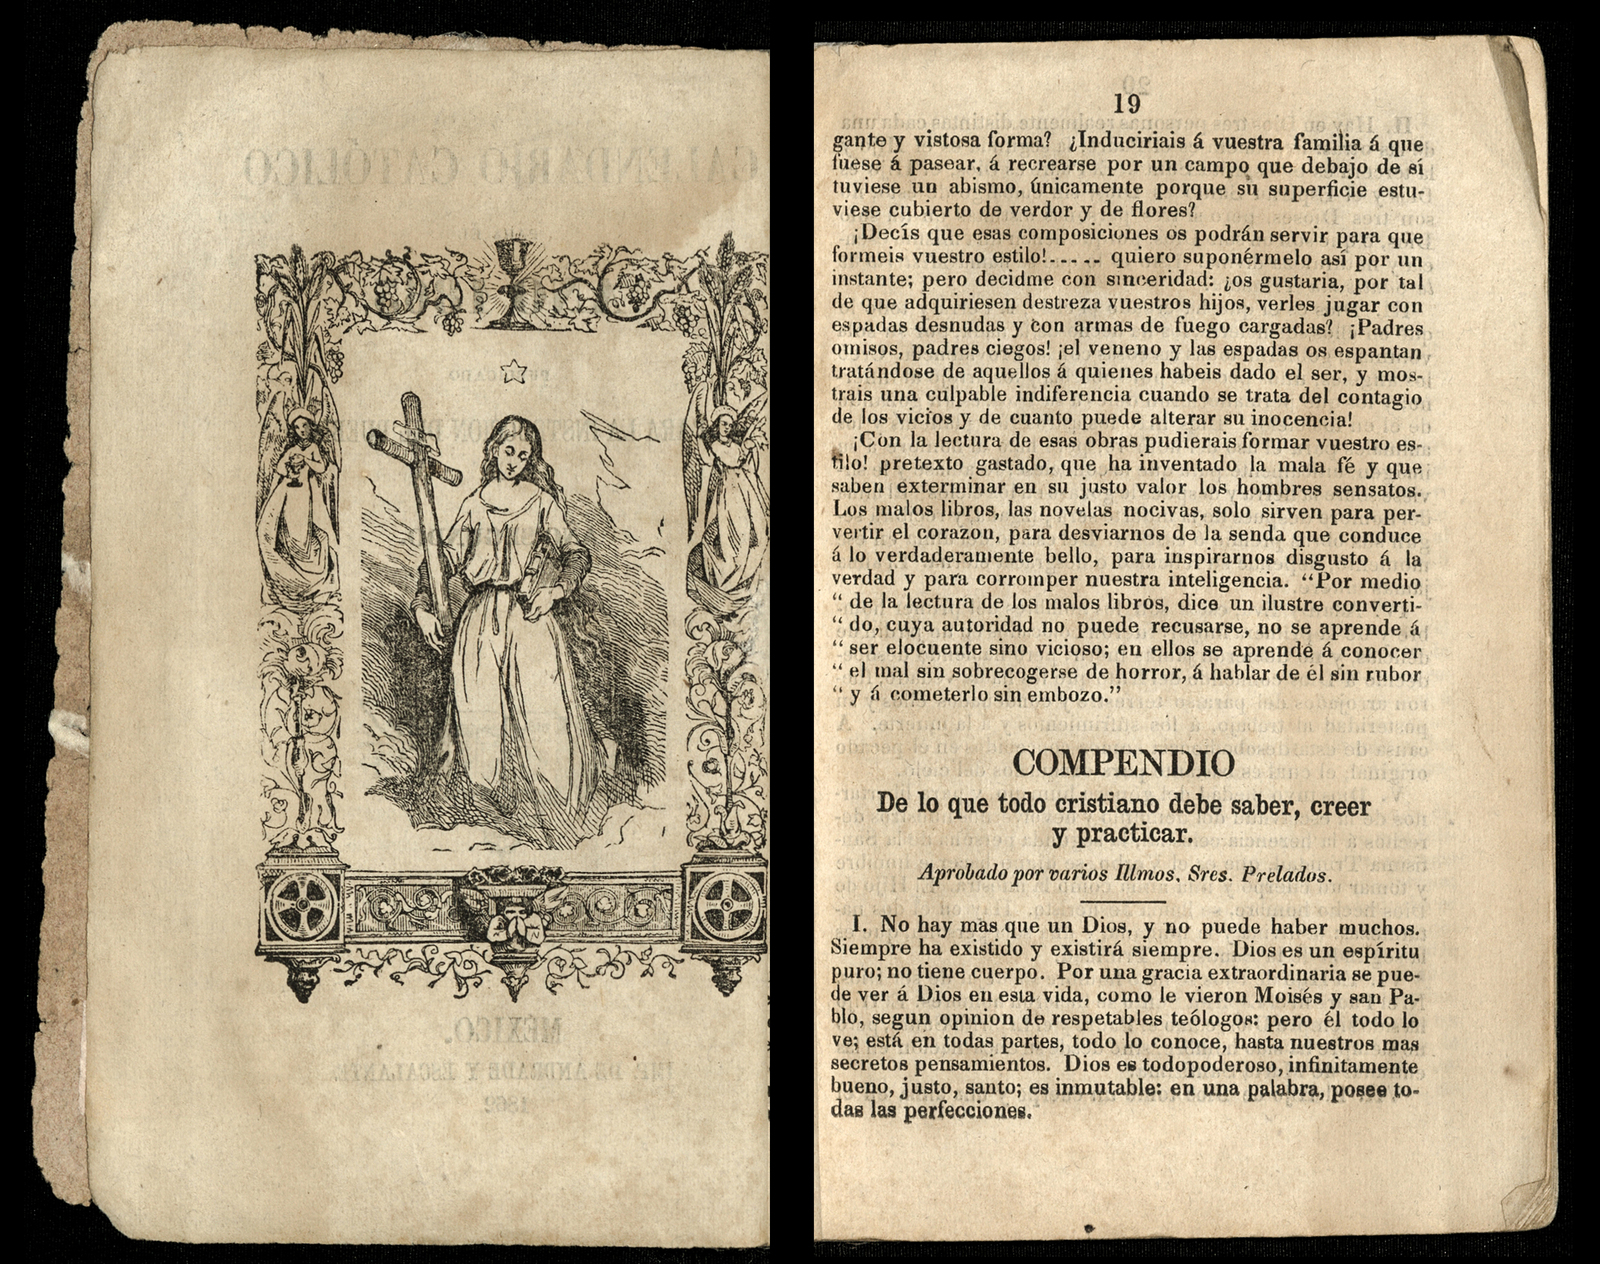 Calendario Católico para el año 1863 publicado para la instrucción del pueblo.